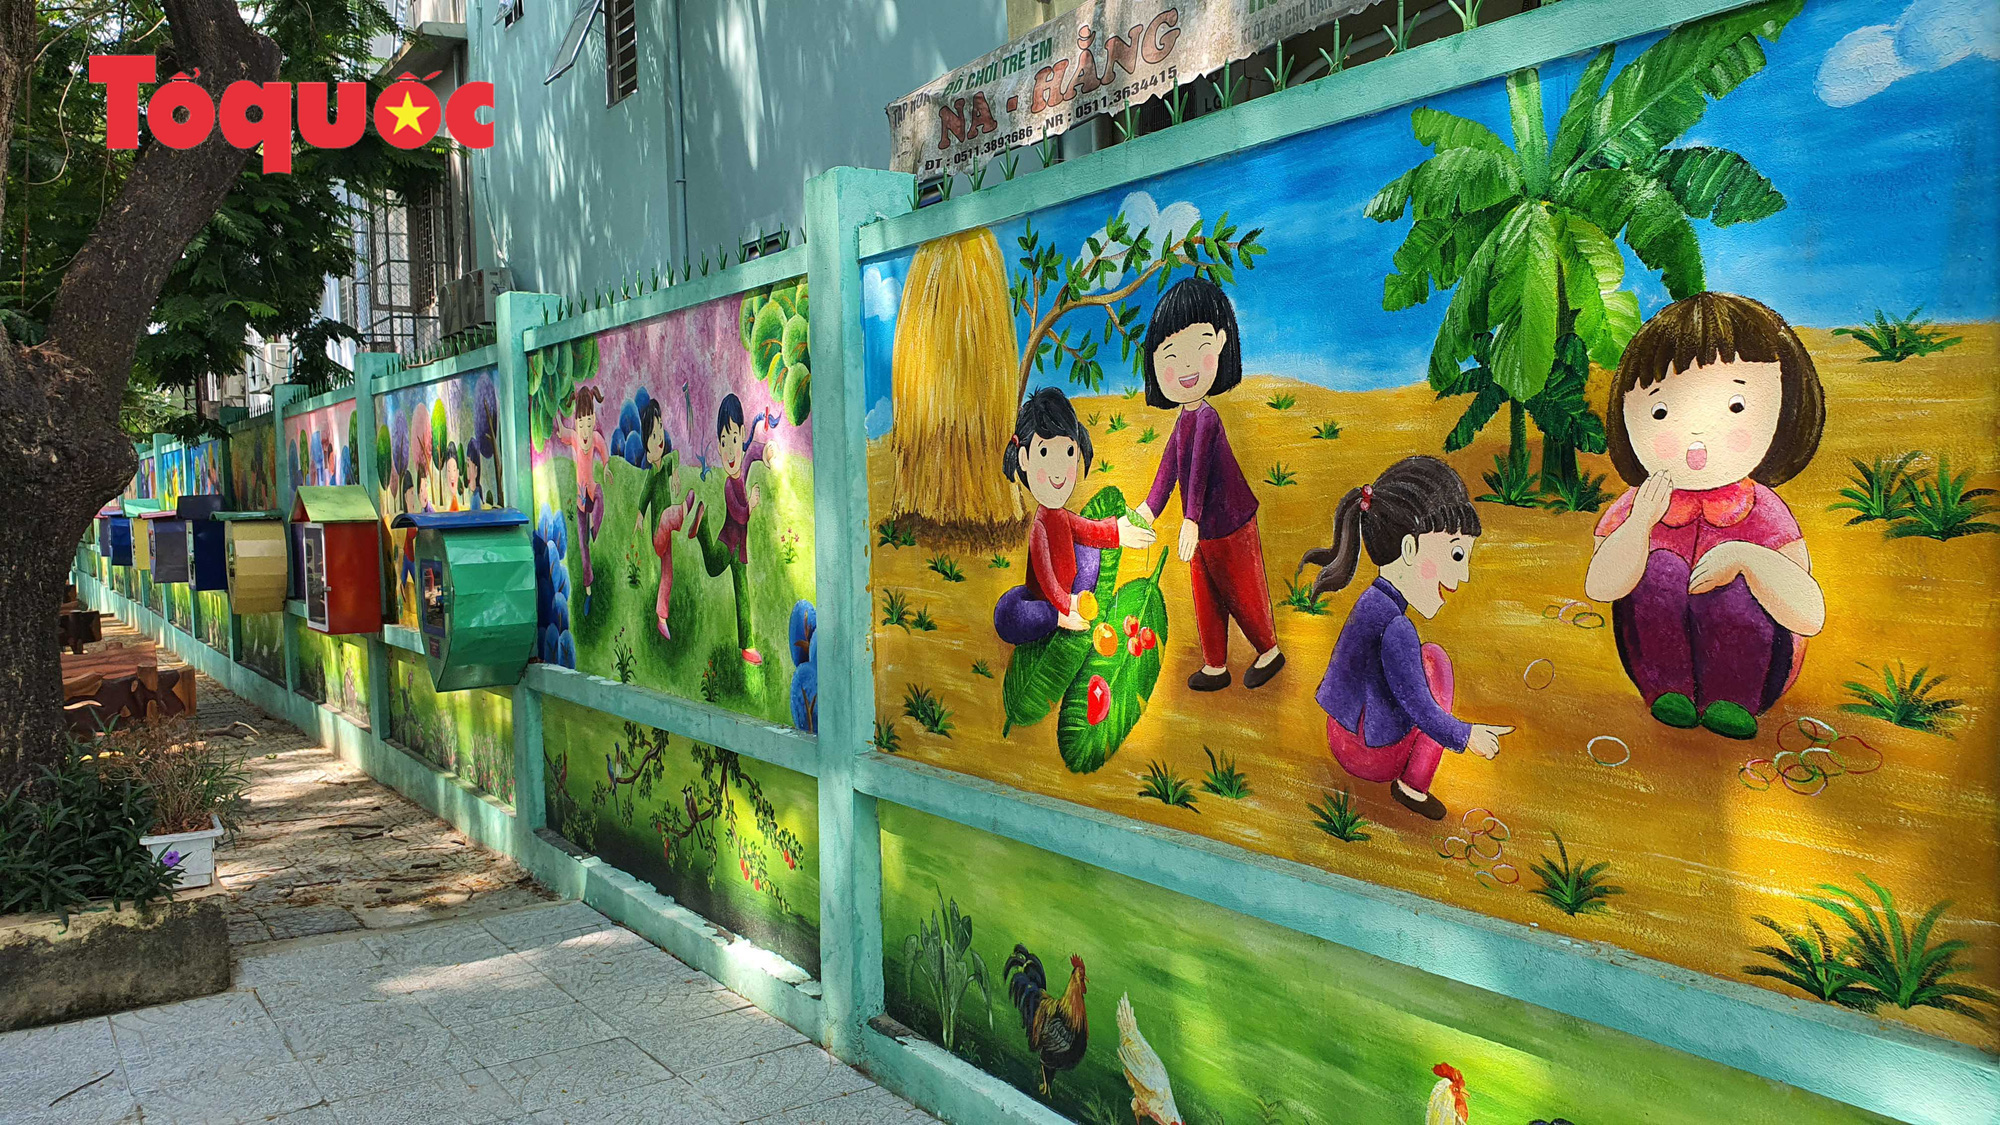 Trang trí tường bằng những bức tranh vẽ tay đầy màu sắc đã trở thành một xu hướng và được ưa chuộng trên toàn thế giới. Vẽ tranh tường tiểu học là một trong những dịch vụ vẽ tranh tường đang được nhiều người lựa chọn, giúp các em học sinh có môi trường học tập đầy sáng tạo và độc đáo.